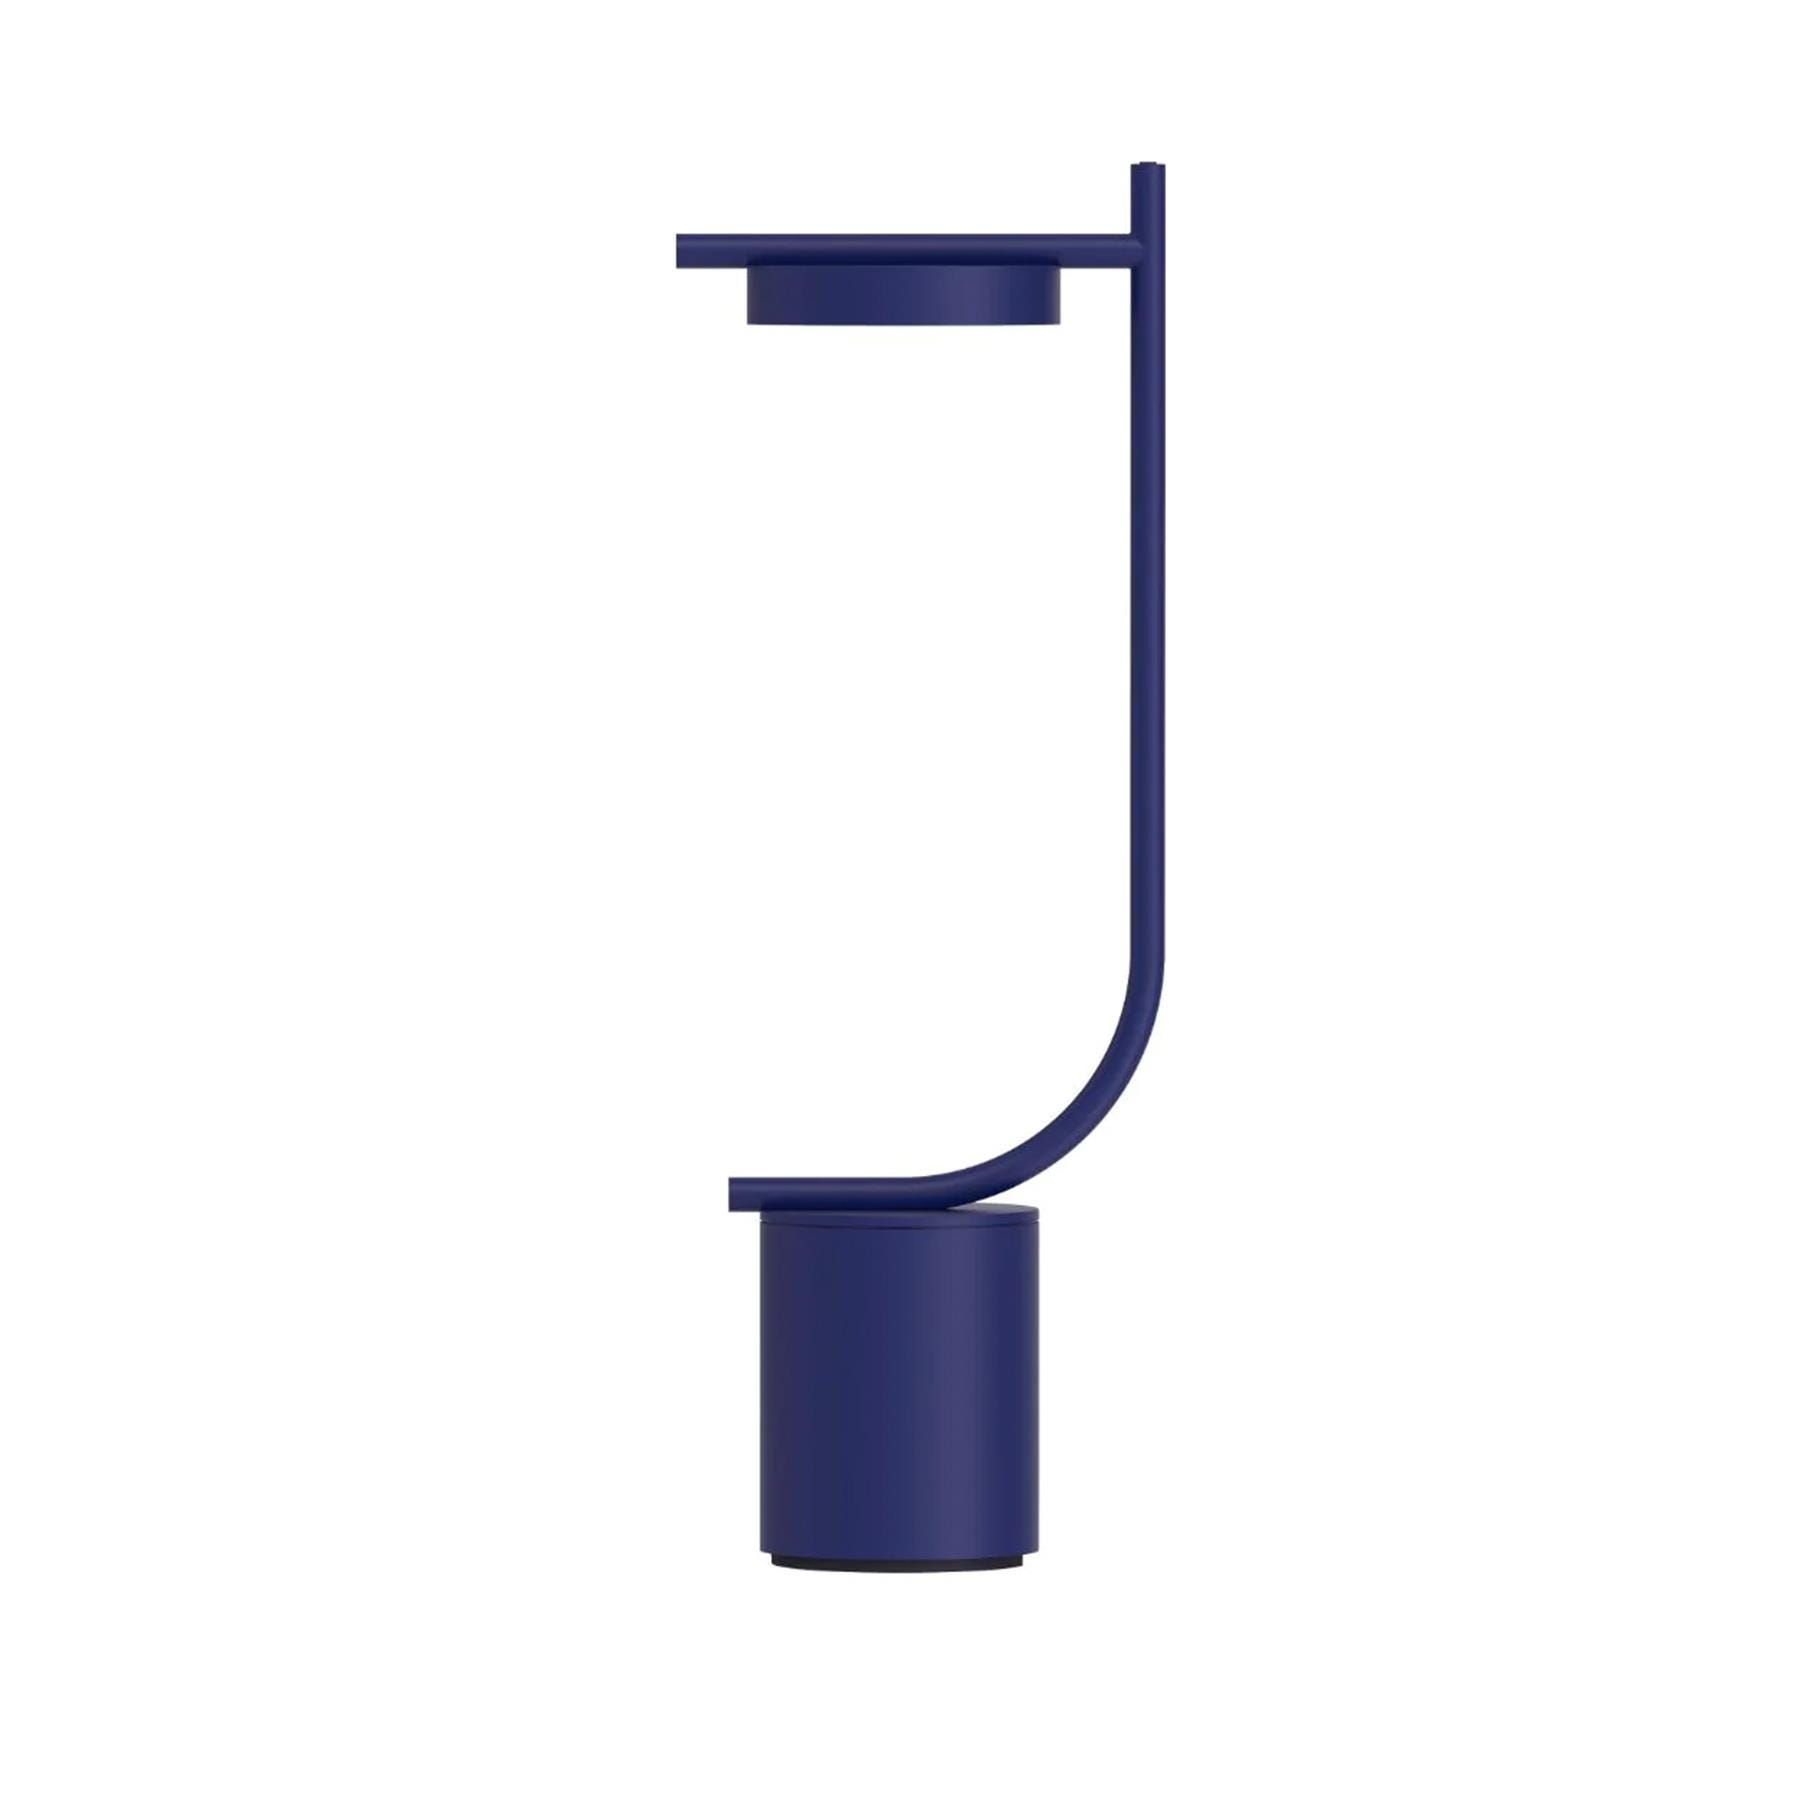 Grupa Igram Portable Table Lamp J Shape Blue Designer Lighting From Holloways Of Ludlow